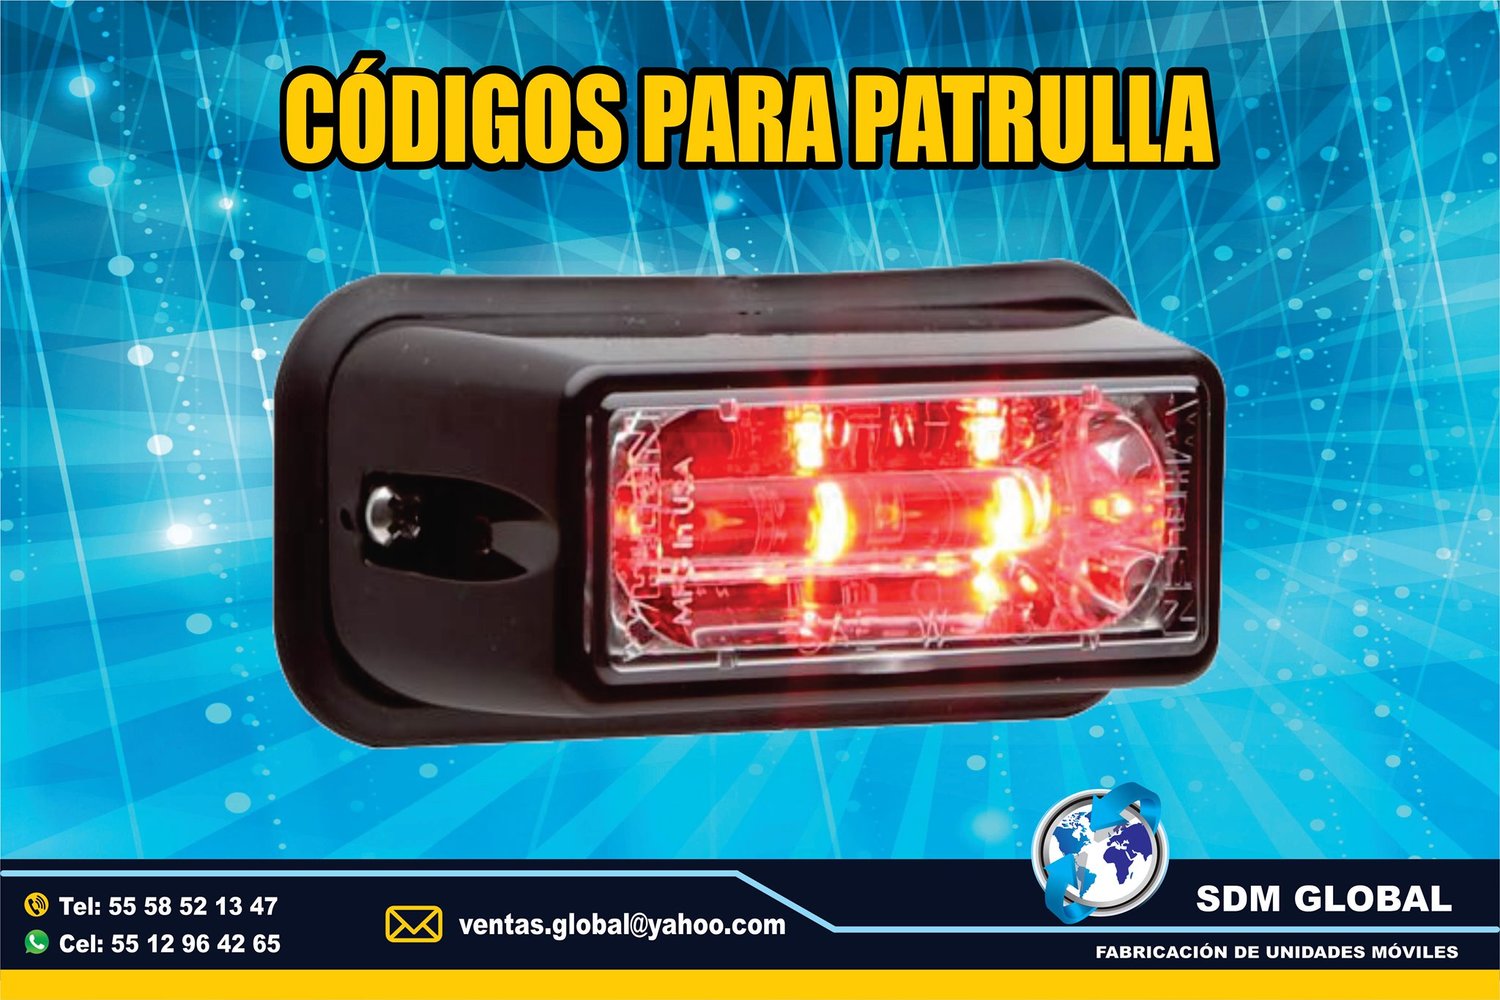 <span style="font-weight: bold;">Venta de Codigos Estrobos y Luces para patrullas rojo</span><br>